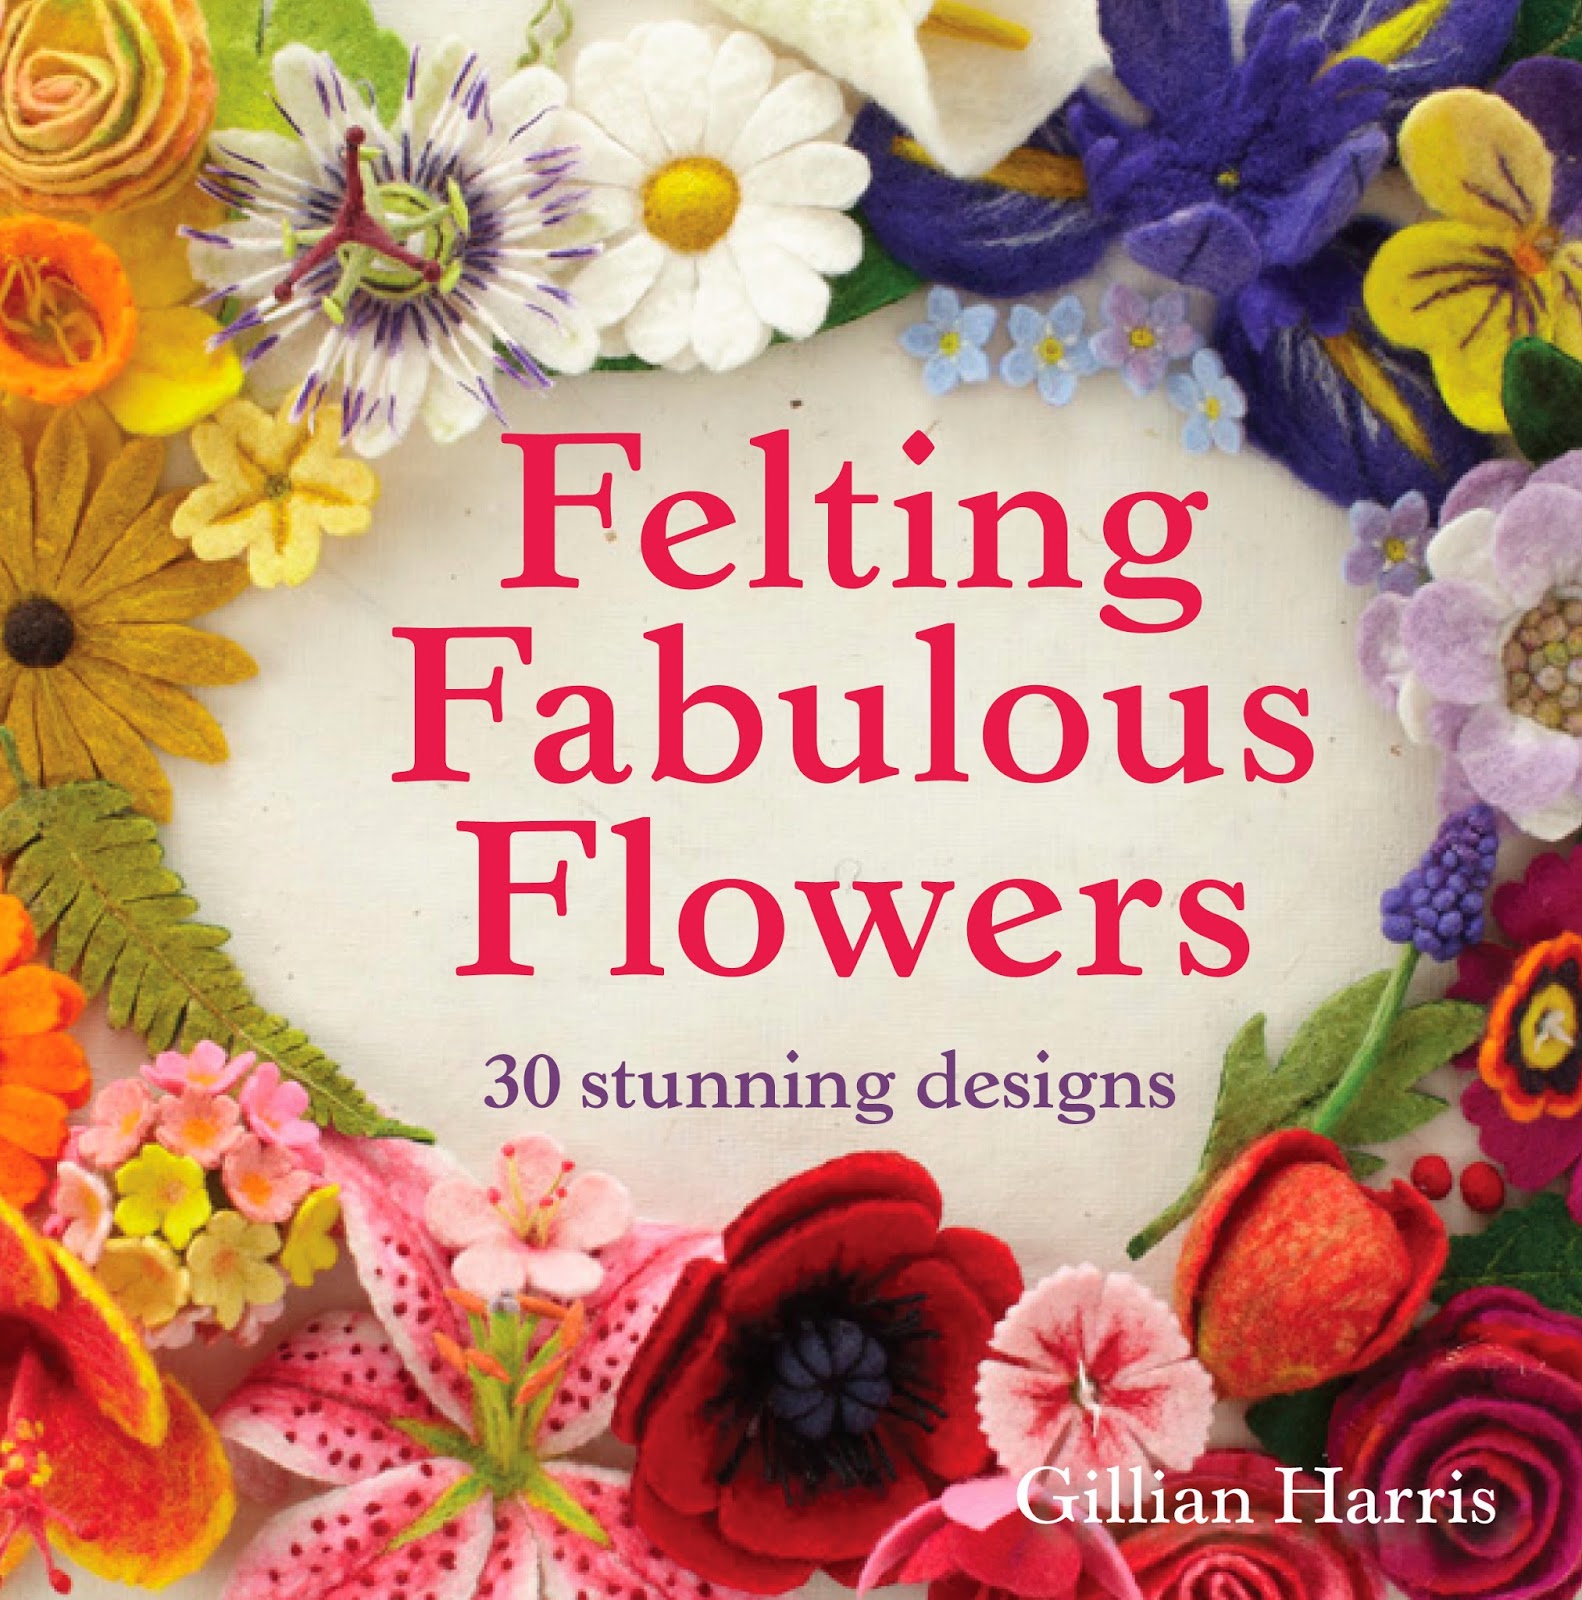 Felting Fabulous Flowers by Gillian Harris